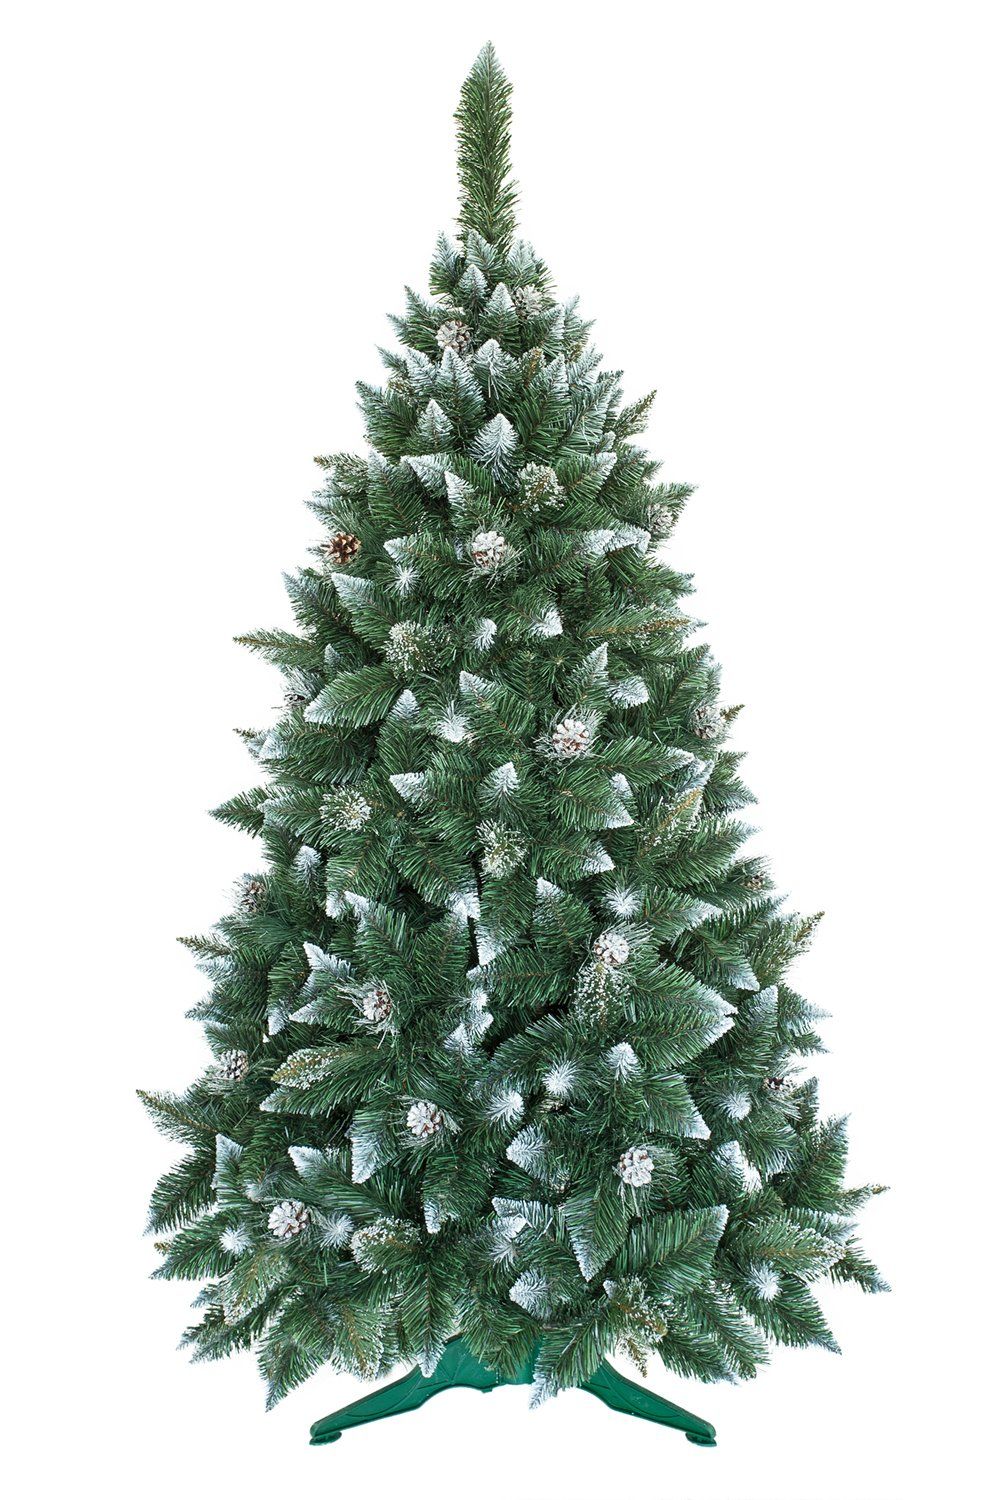 Umelý vianočný stromček Borovica Strieborná s kryštálmi ľadu 150cm